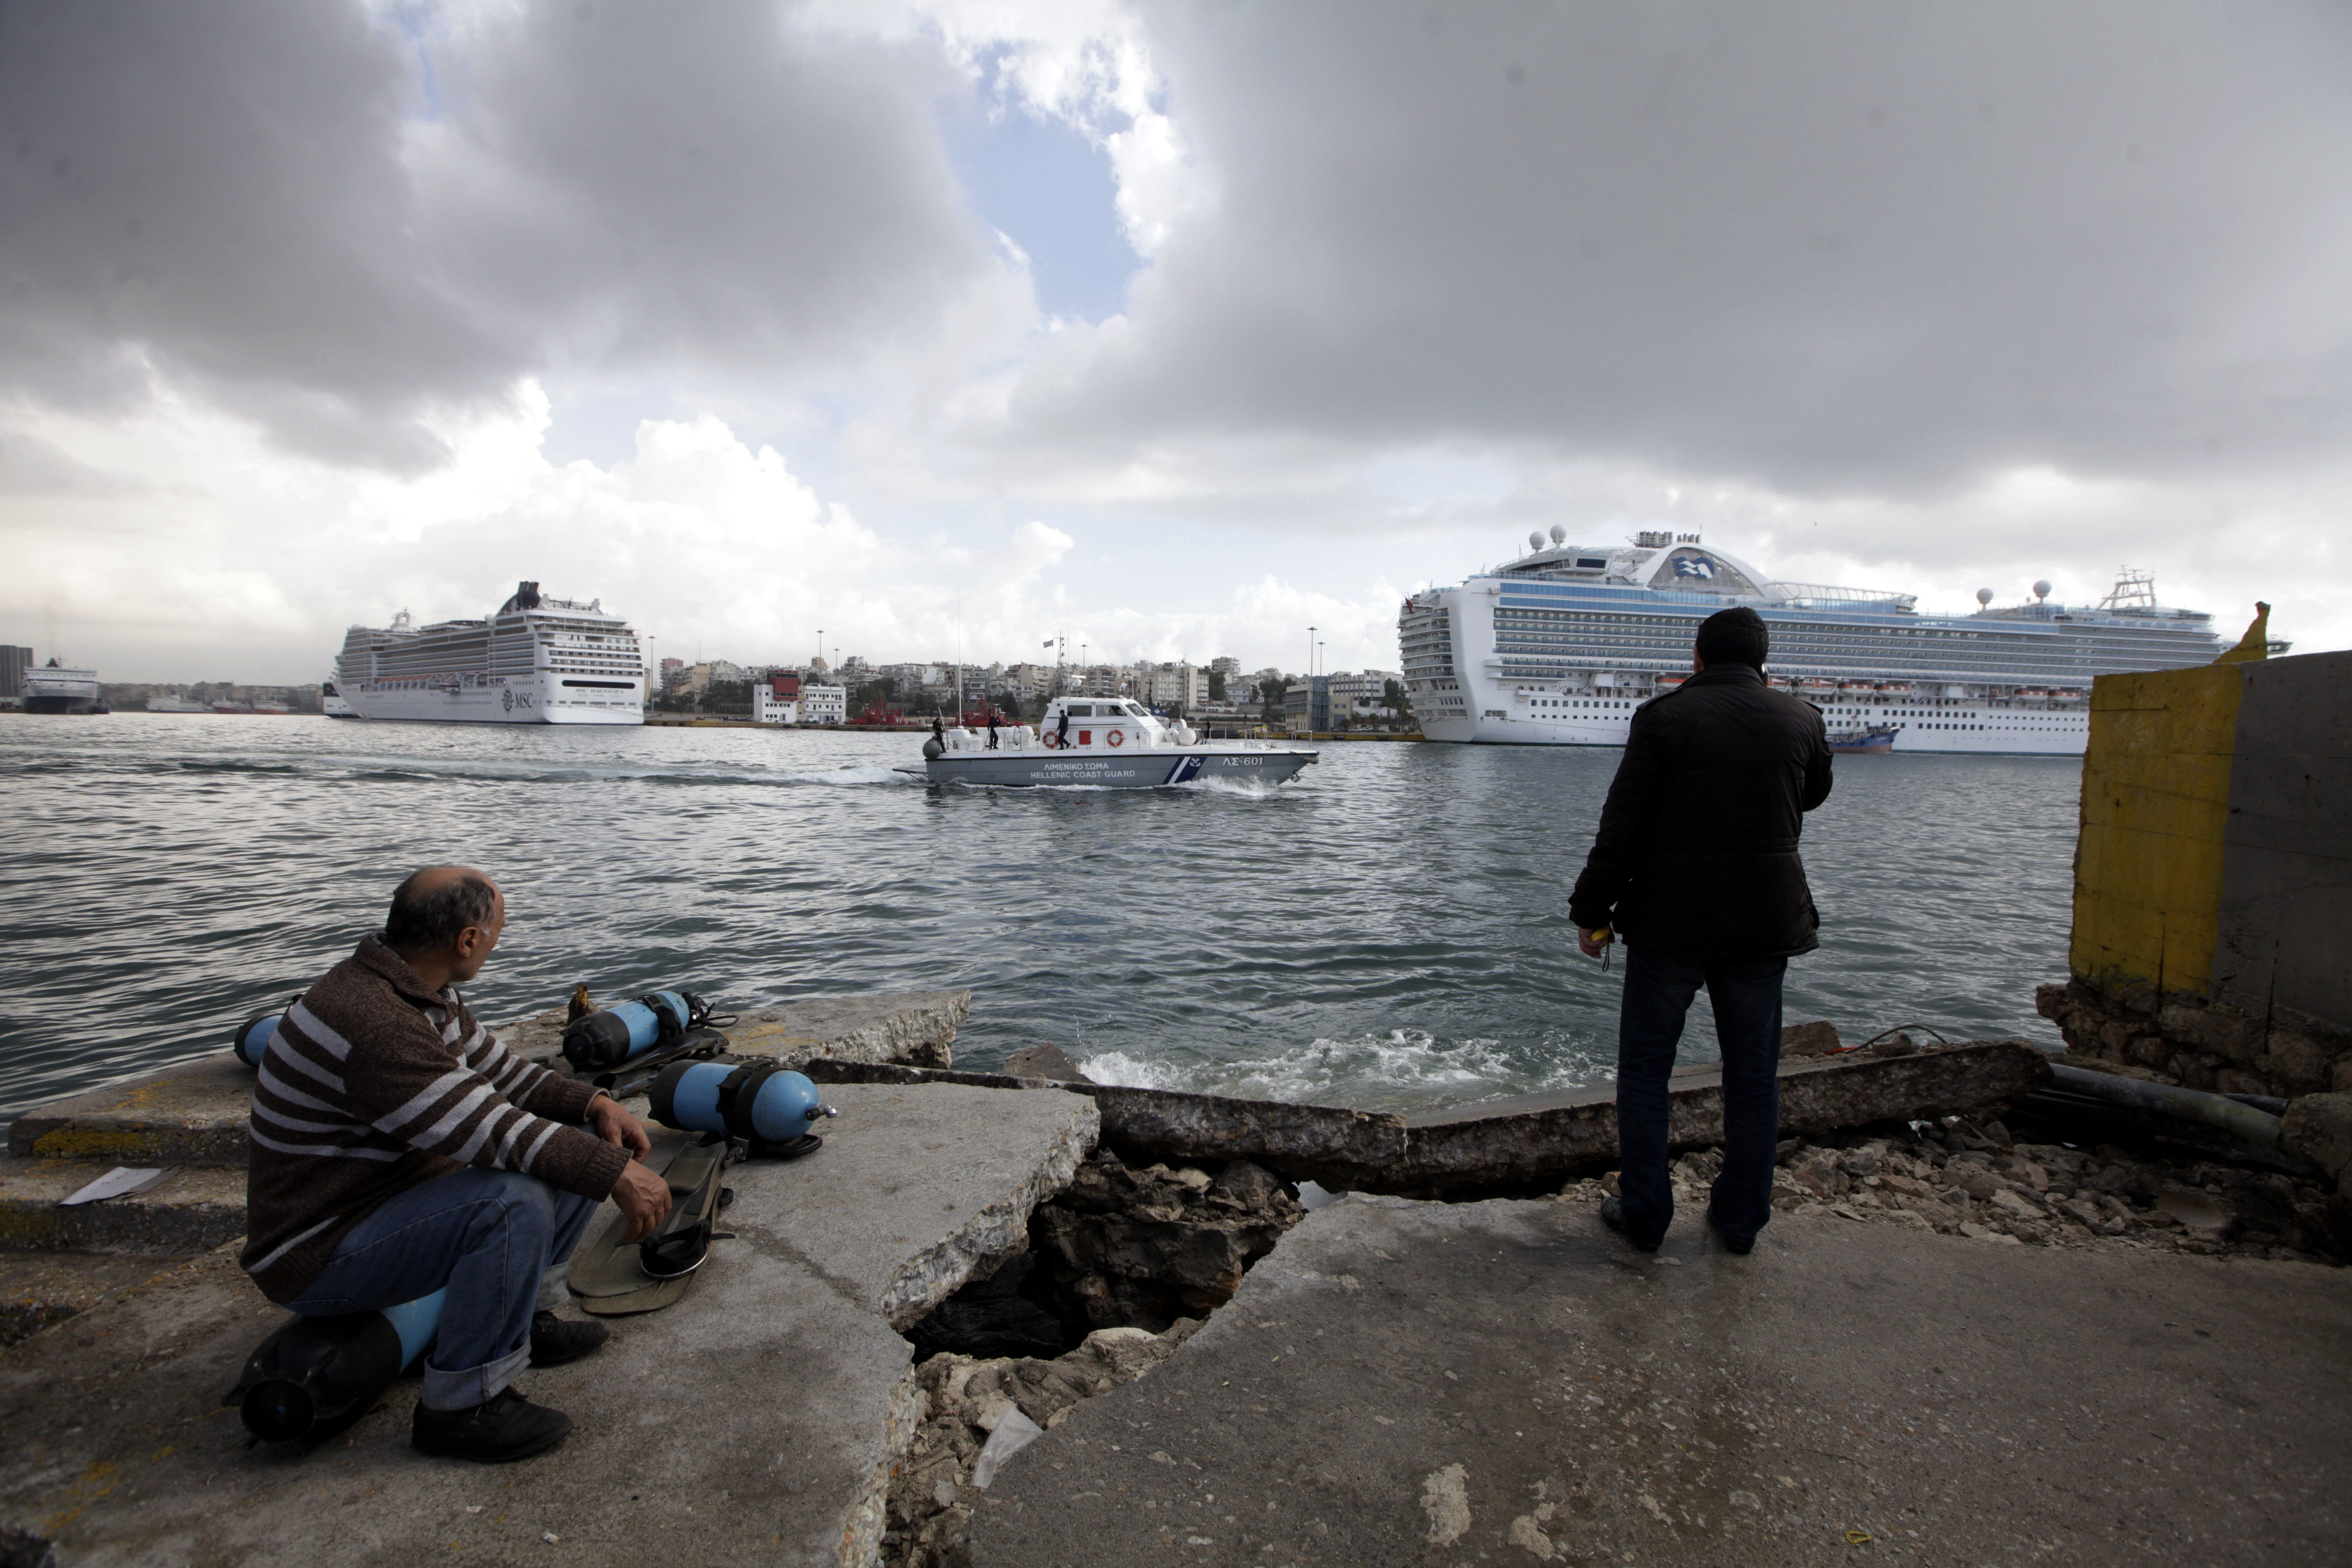 Ο “καιρός” έριξε το κρουαζιερόπλοιο στο λιμάνι του Πειραιά! ΔΕΙΤΕ ΦΩΤΟ